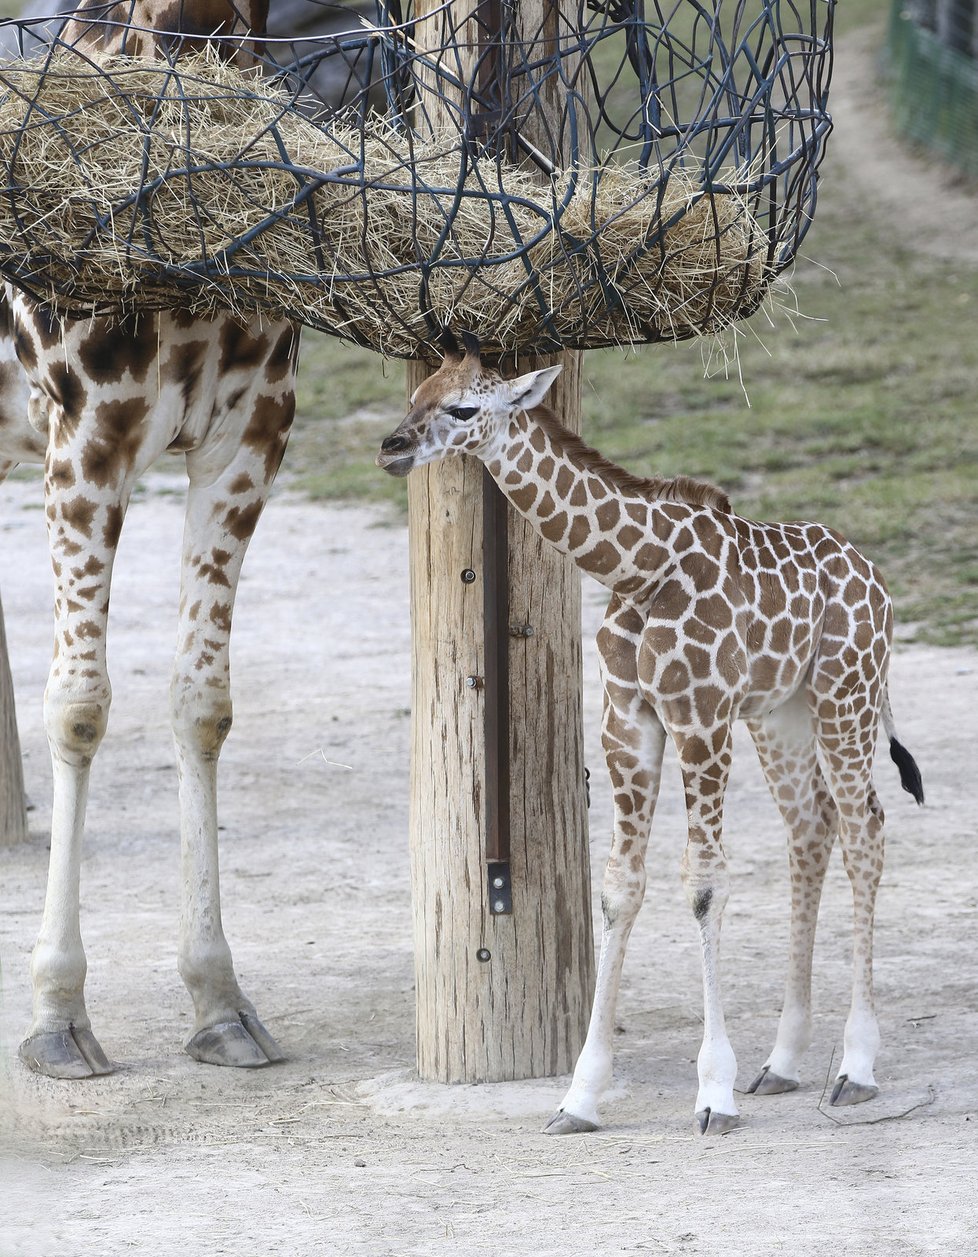 Žirafímu mláděti se velmi dobře daří. Má skvělou mámu, tety i ošetřovatele.